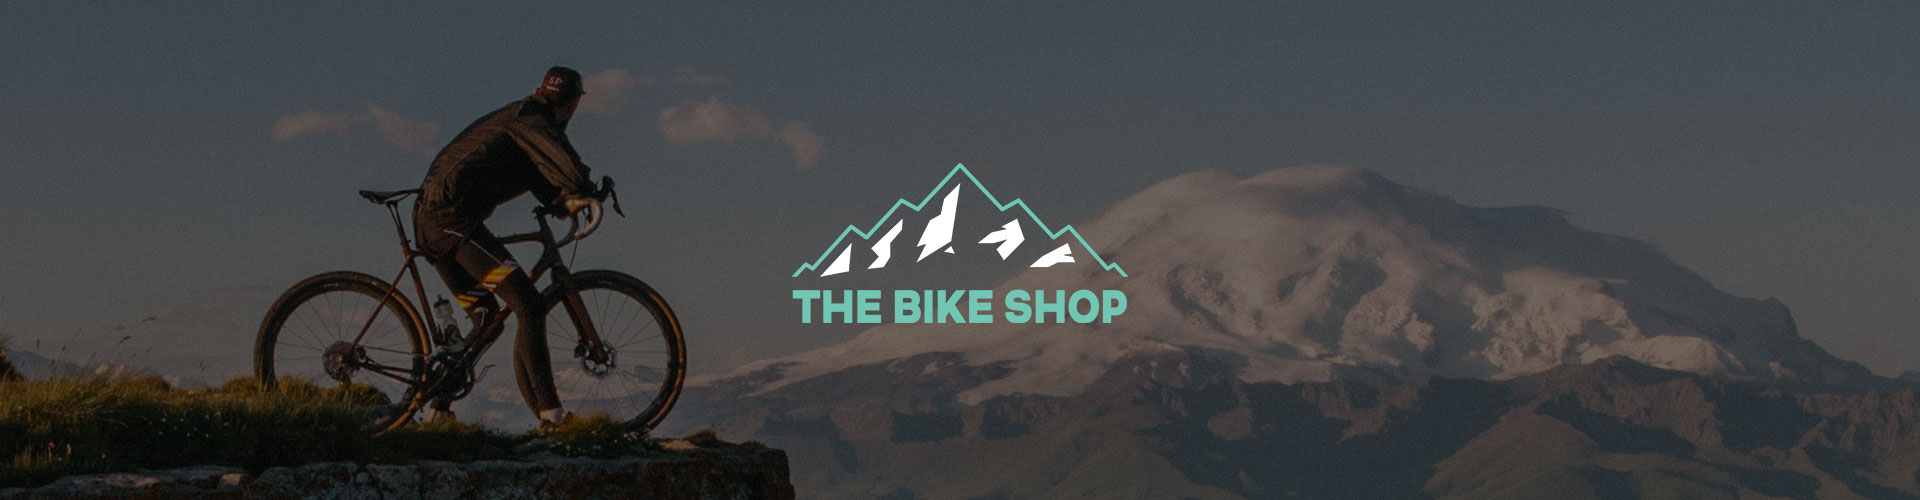 The Bike Shop banner